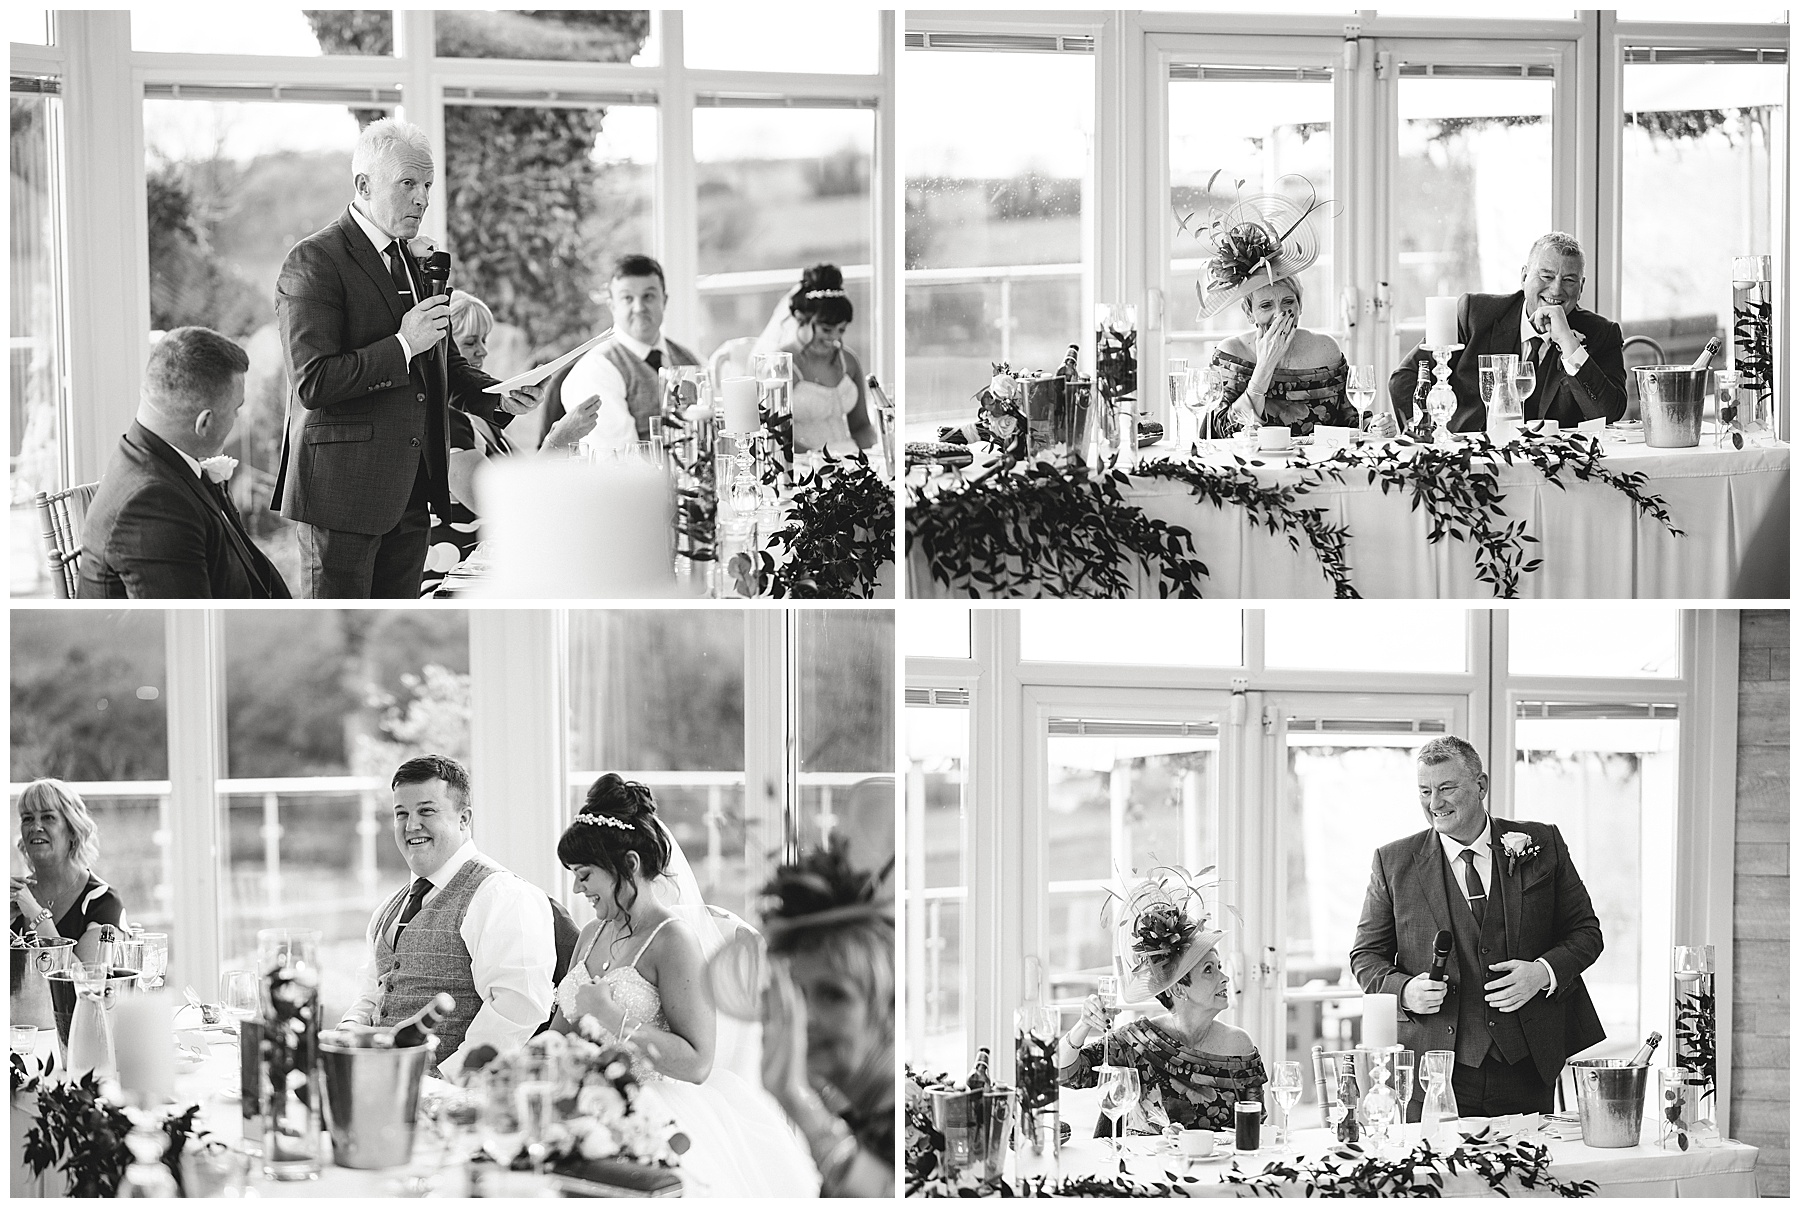 Wedding Speeches at Oldwalls Gower